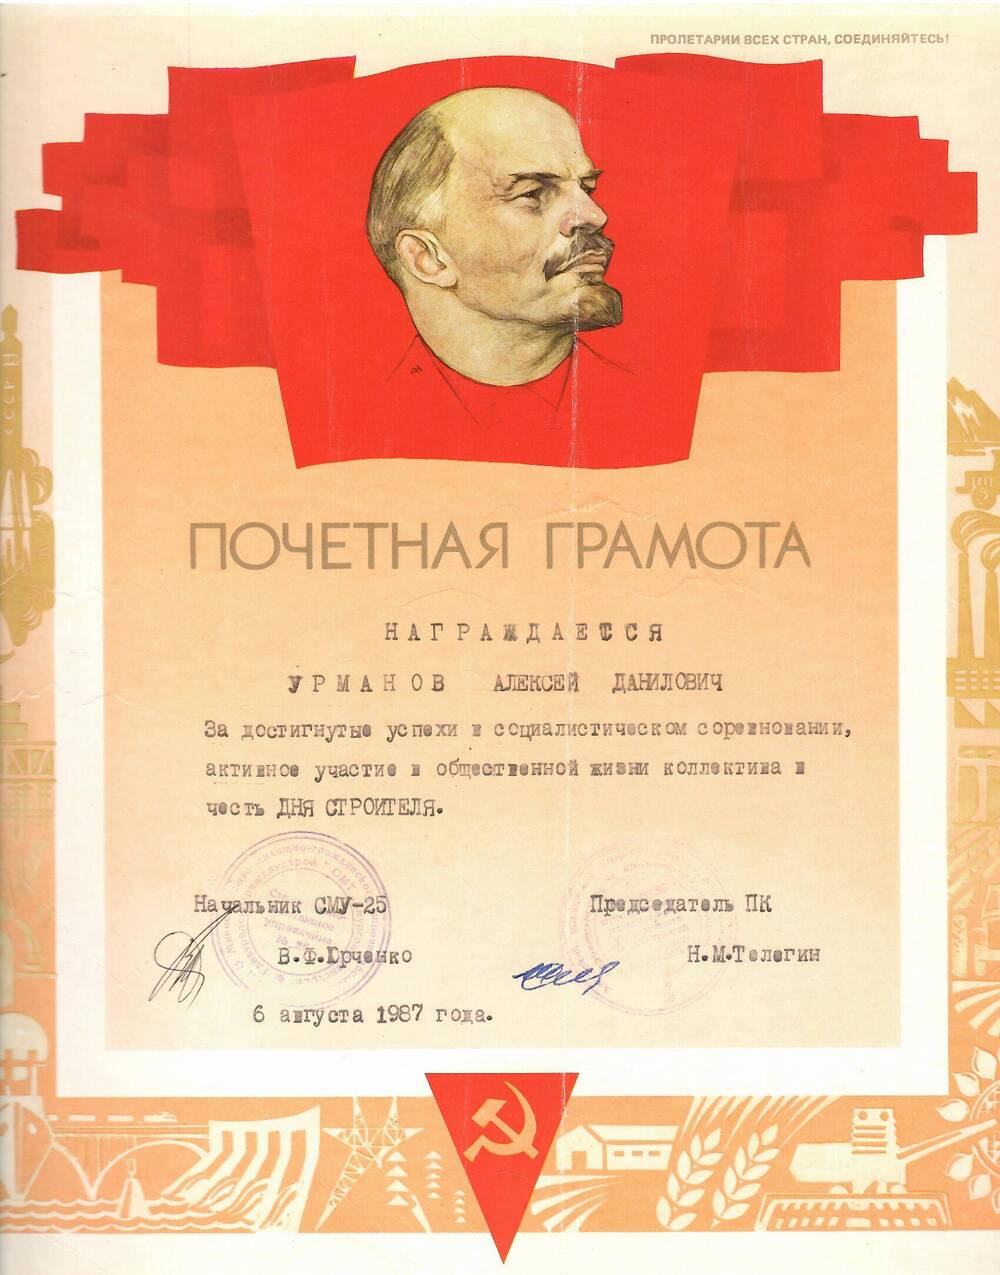 Грамота почётная Урманову Алексею Даниловичу за достигнутые успехи в социалистическом соревновании